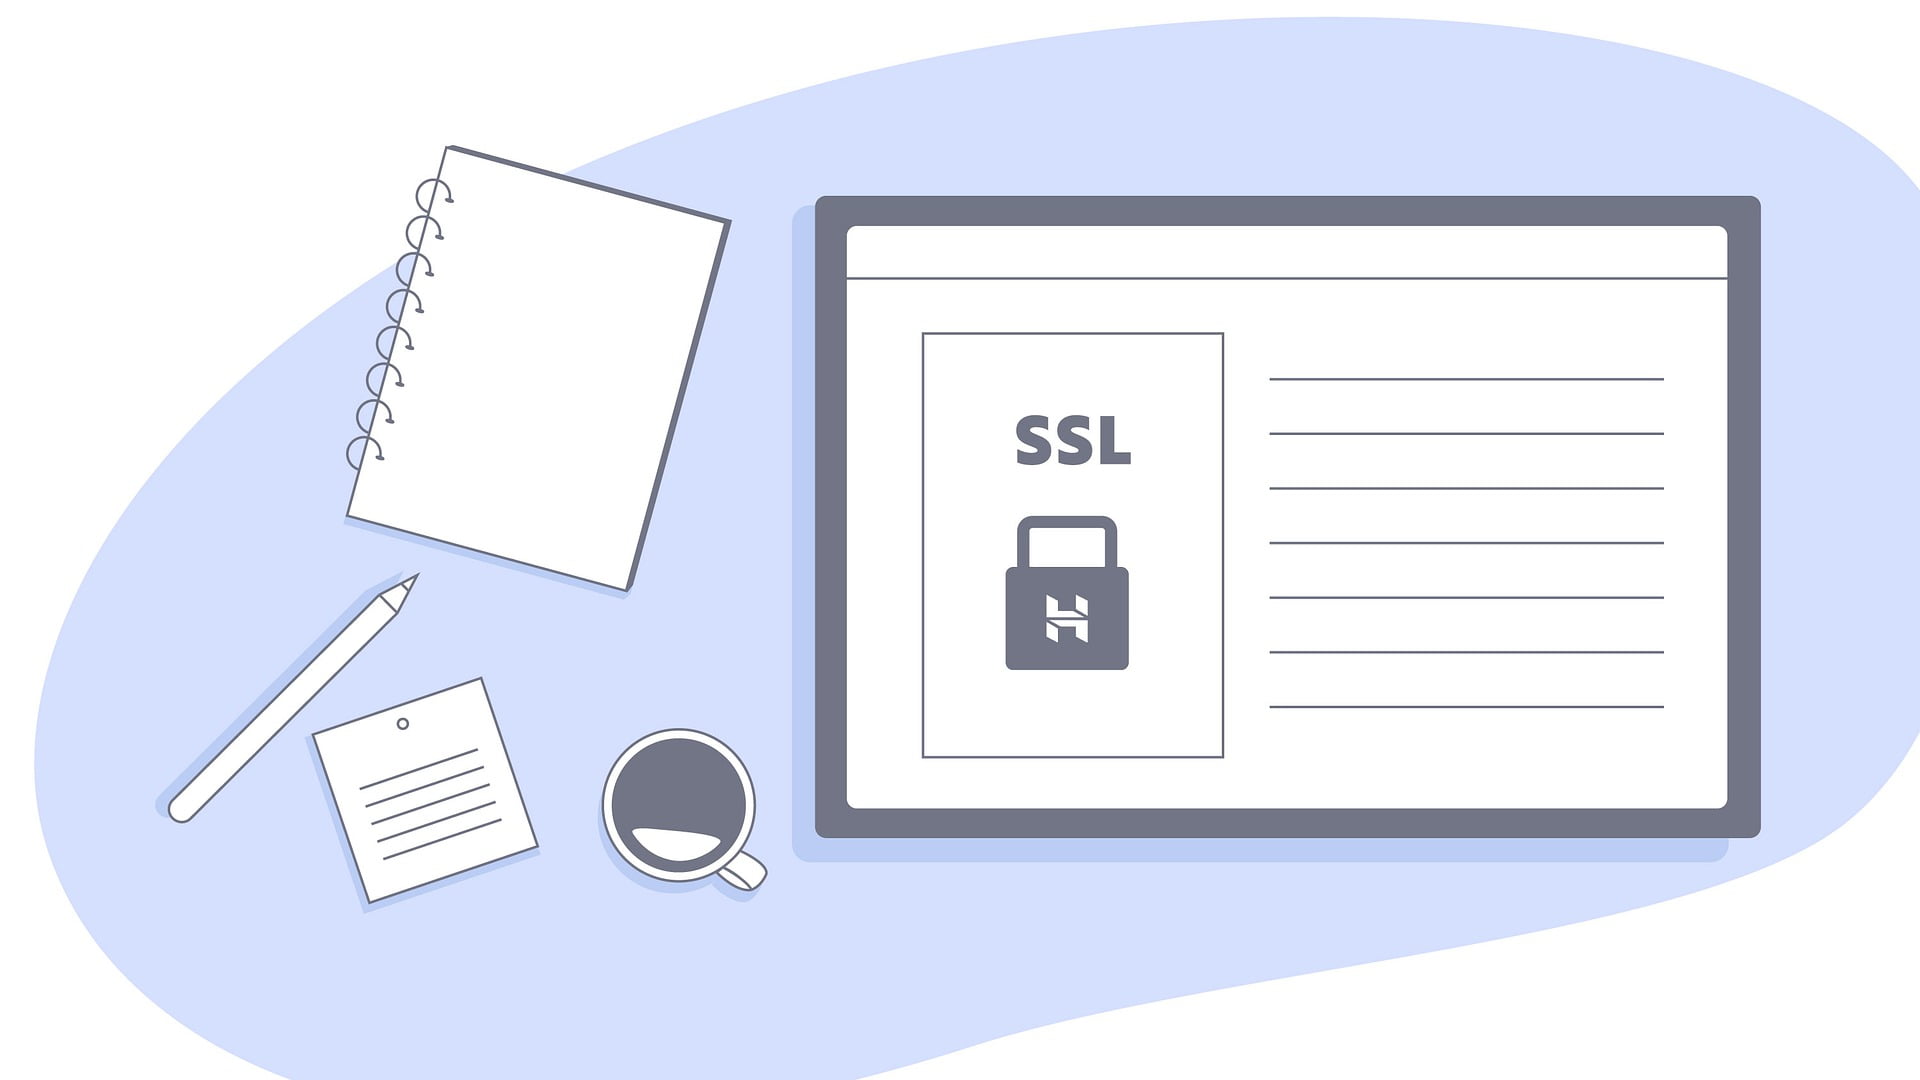 Hướng dẫn đặt mua SSL trả phí từ SSLs.com và cách cấu hình SSL trên Cyberpanel